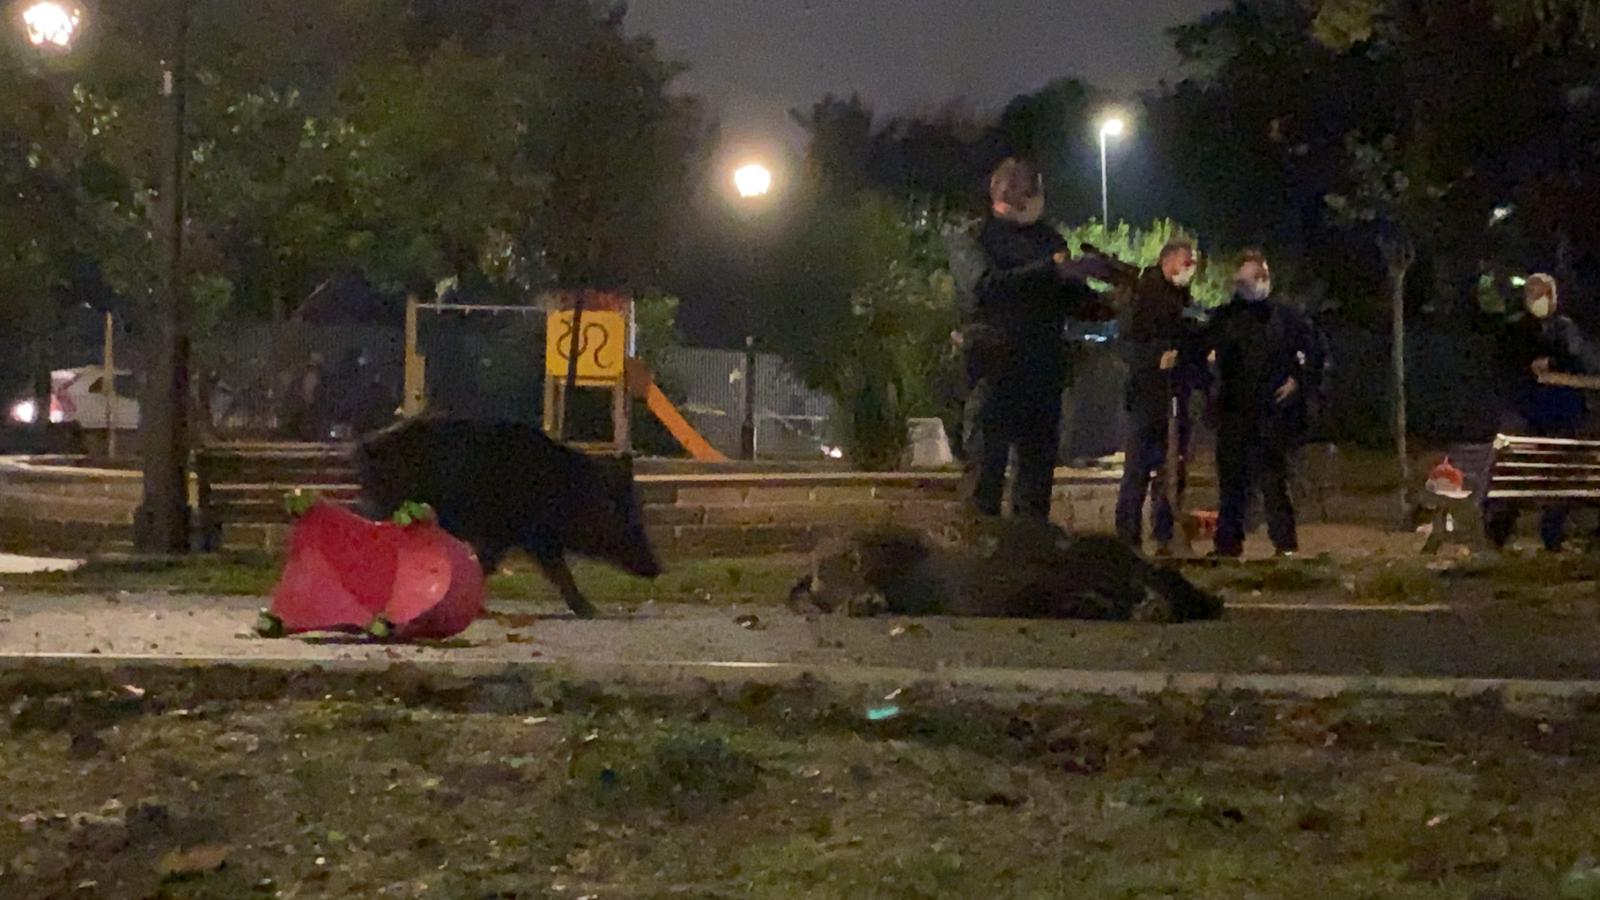 La Polizia provinciale spara ai cinghiali mentre un cucciolo si avvicina alla madre, stesa a terra narcotizzata. Foto della Lndc sezione Ostia